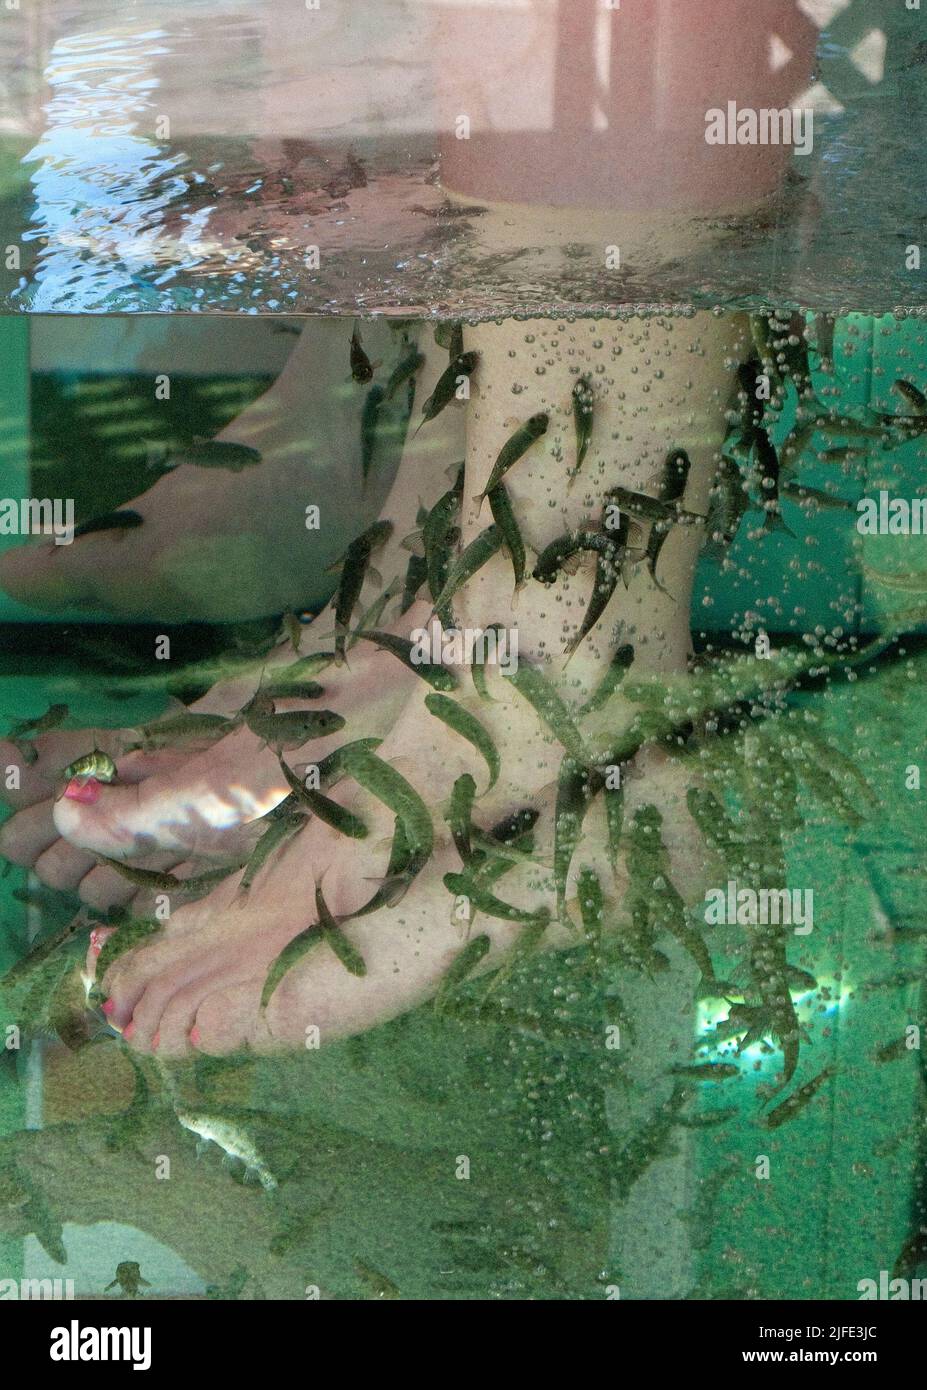 Fish spa -Fotos und -Bildmaterial in hoher Auflösung - Seite 3 - Alamy